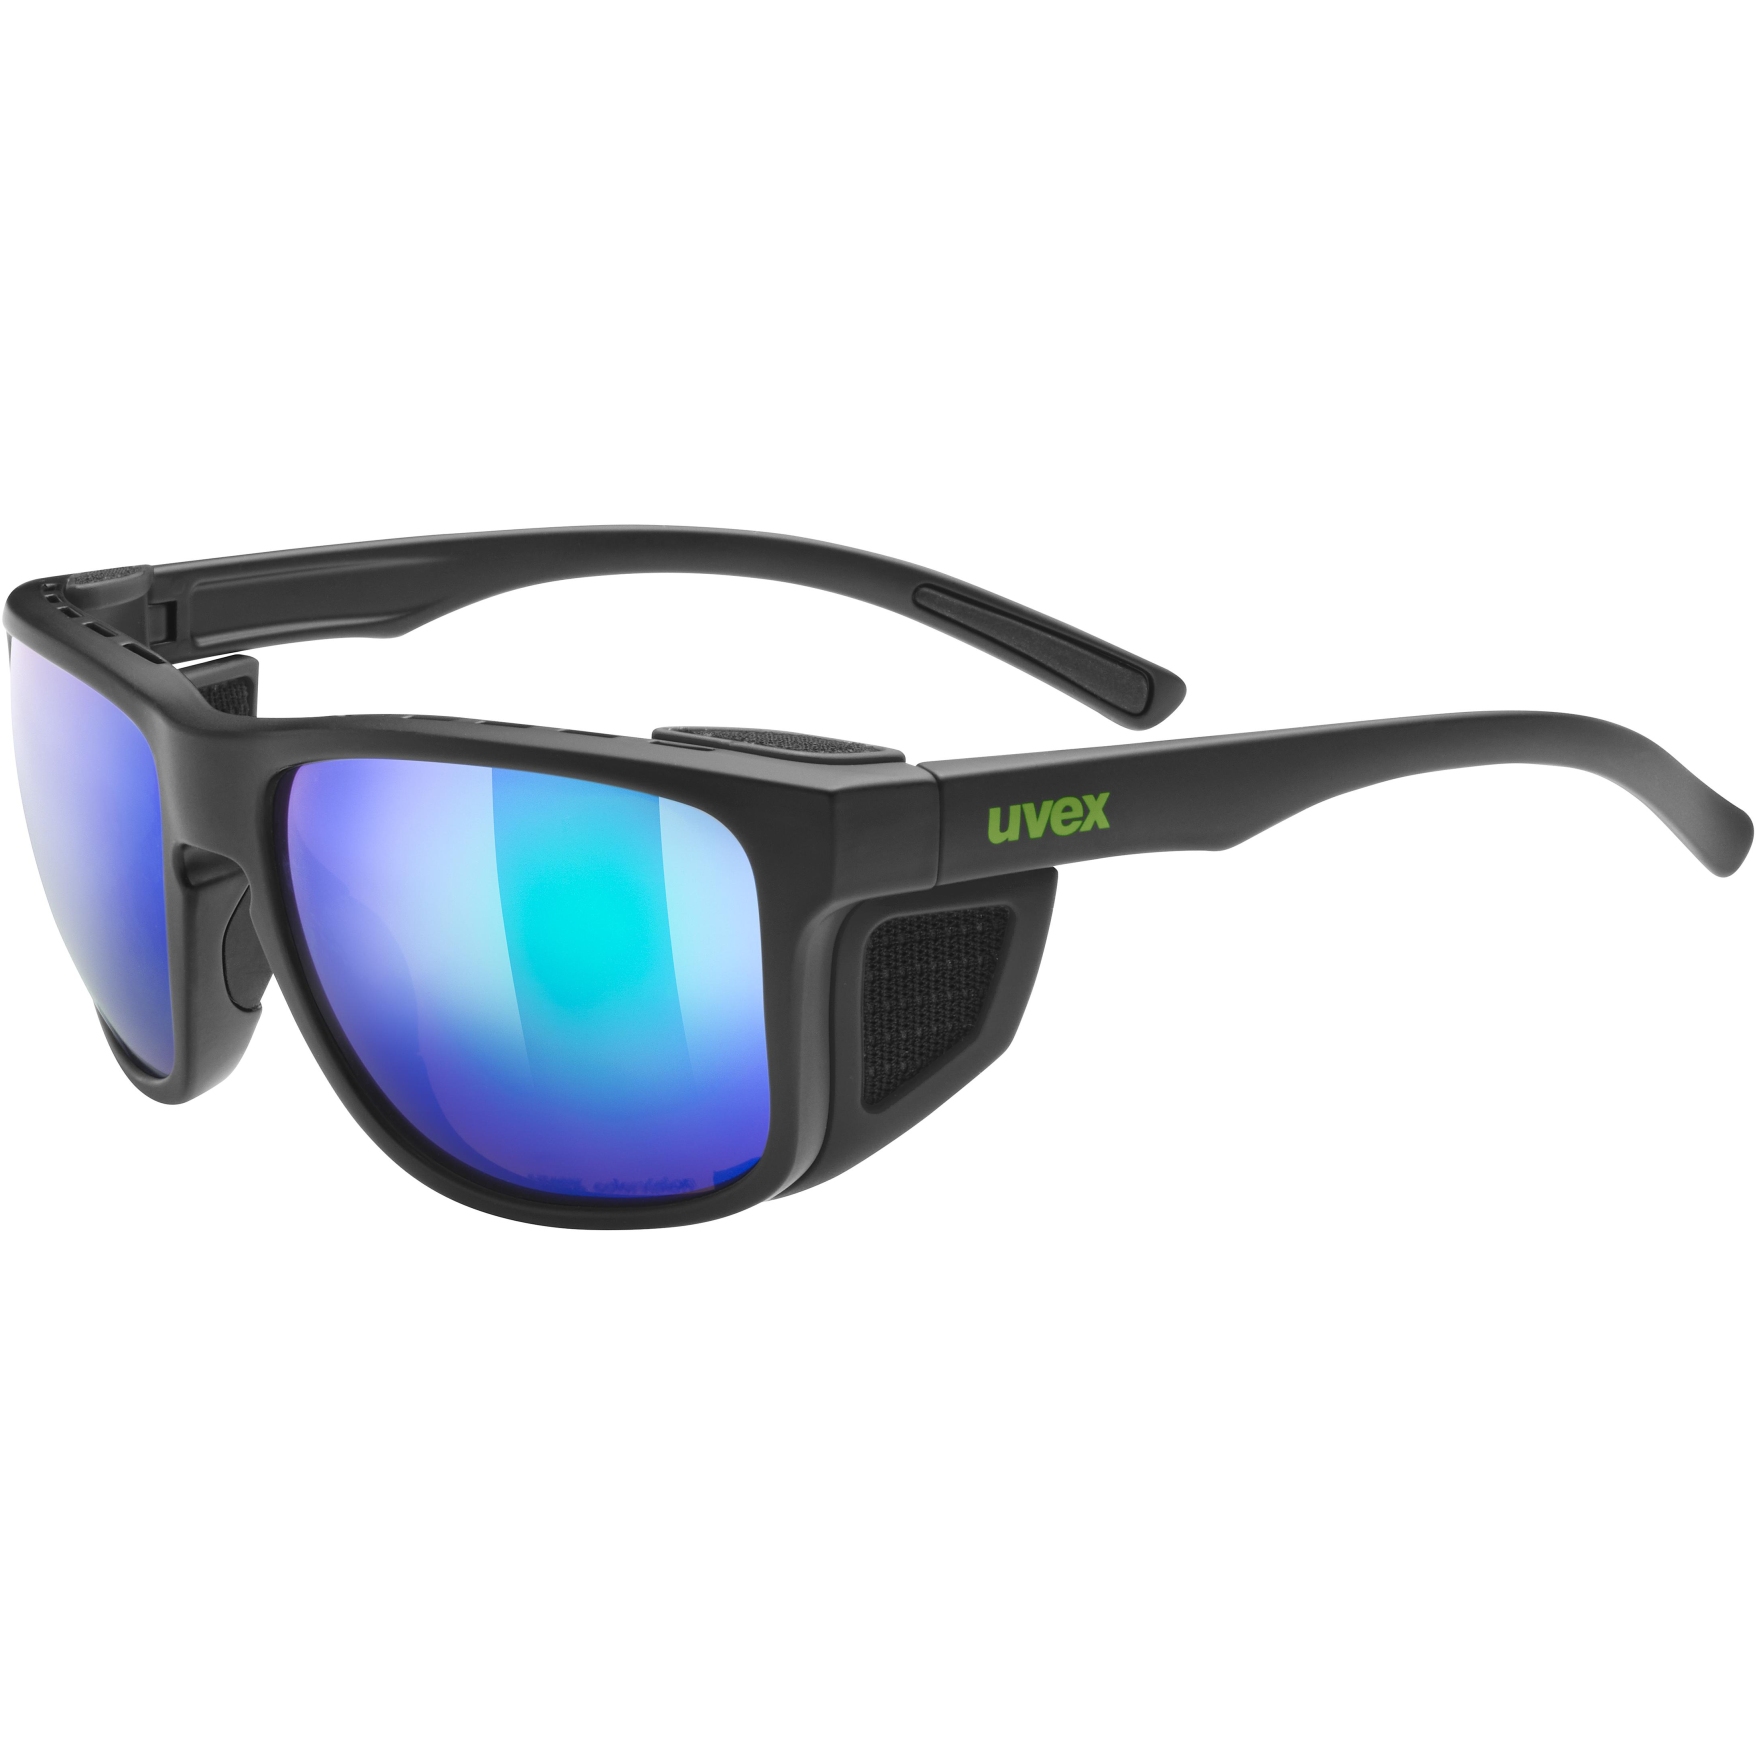 Produktbild von Uvex sportstyle 312 CV Brille - black matt/colorvison mirror green